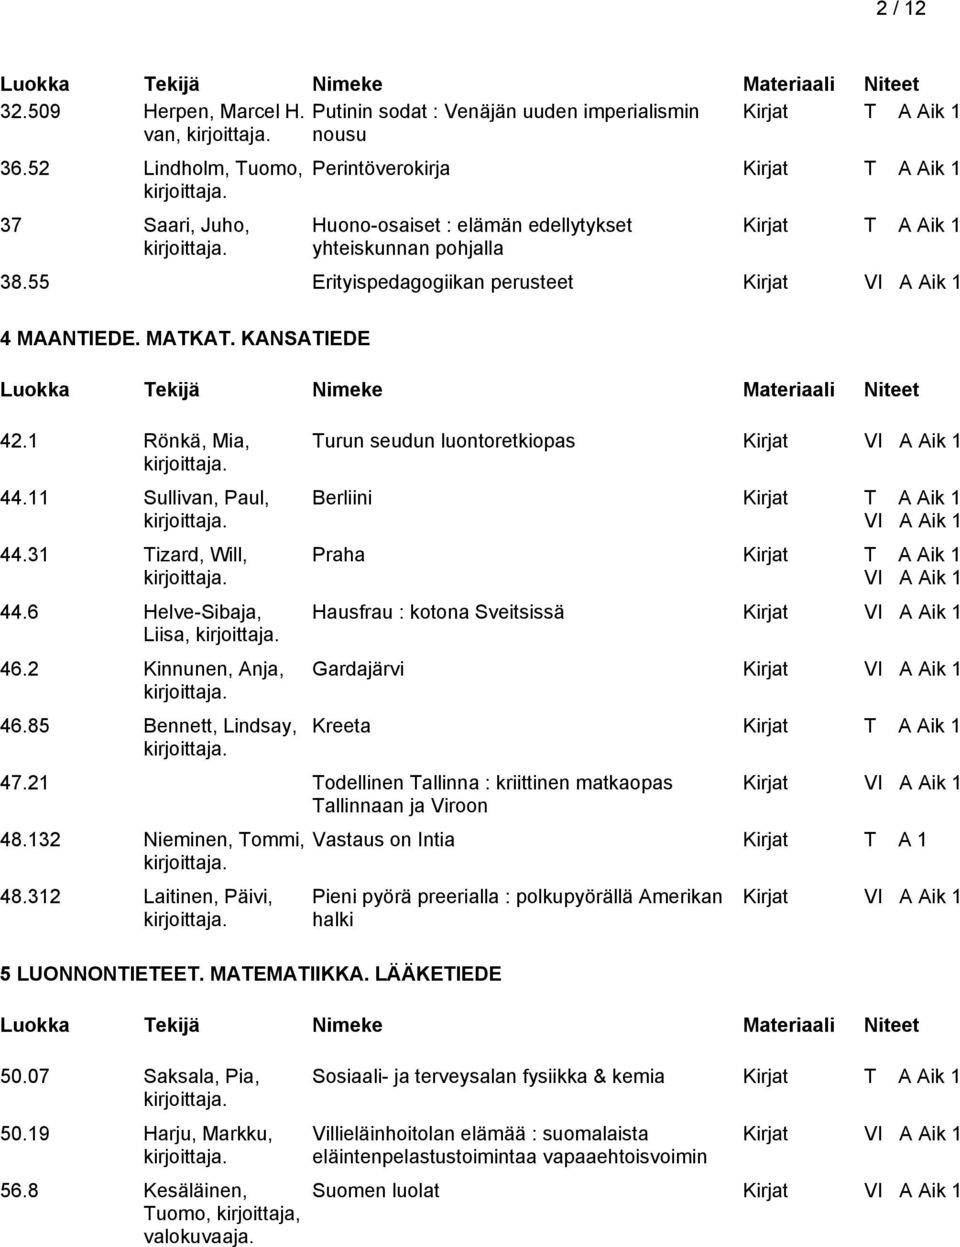 MATKAT. KANSATIEDE 42.1 Rönkä, Mia, 44.11 Sullivan, Paul, 44.31 Tizard, Will, 44.6 Helve-Sibaja, Liisa, 46.2 Kinnunen, Anja, 46.